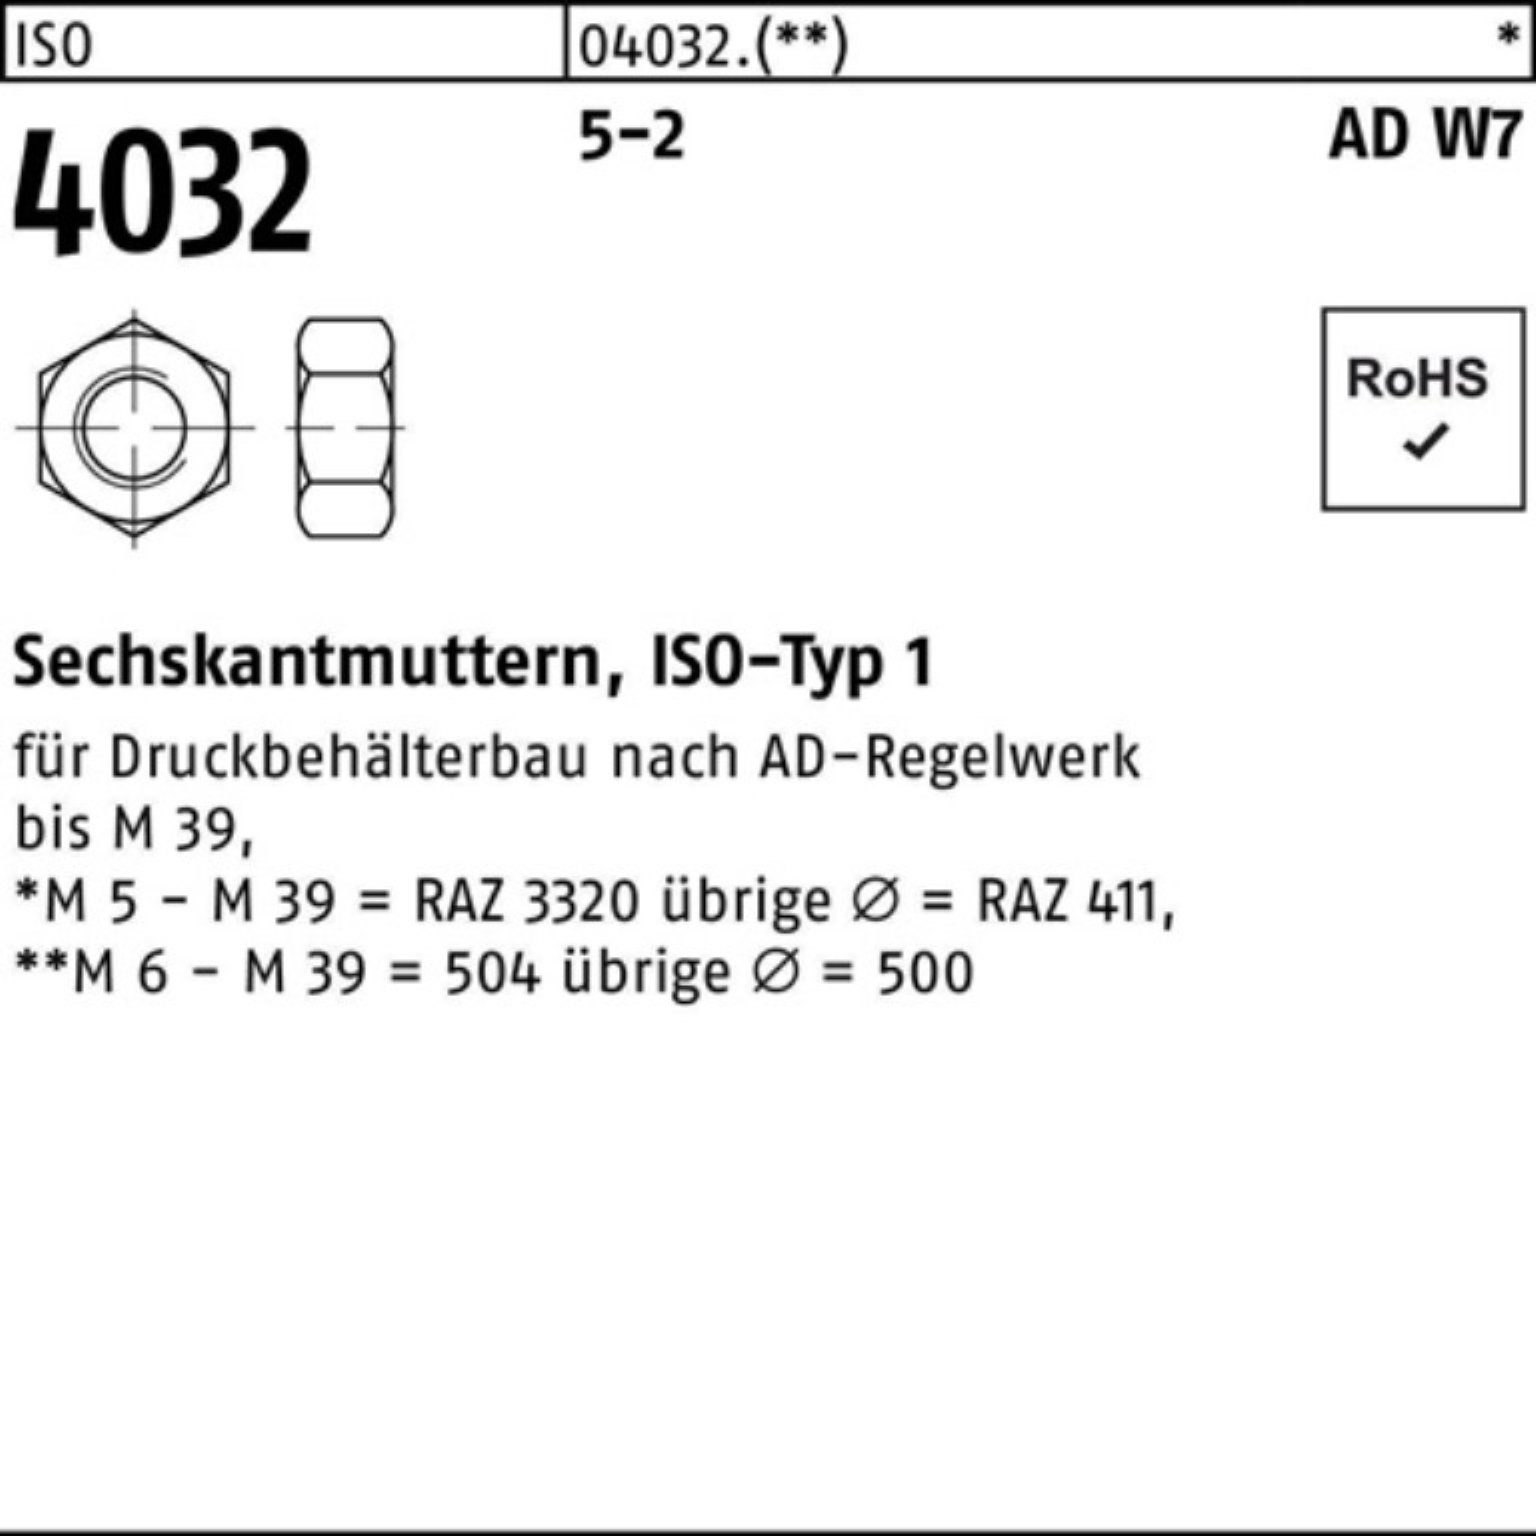 Pack Sechskantmutter 4032 AD 100er 50 4032 W7 ISO M22 ISO 5-2 Stück 5 Muttern Bufab